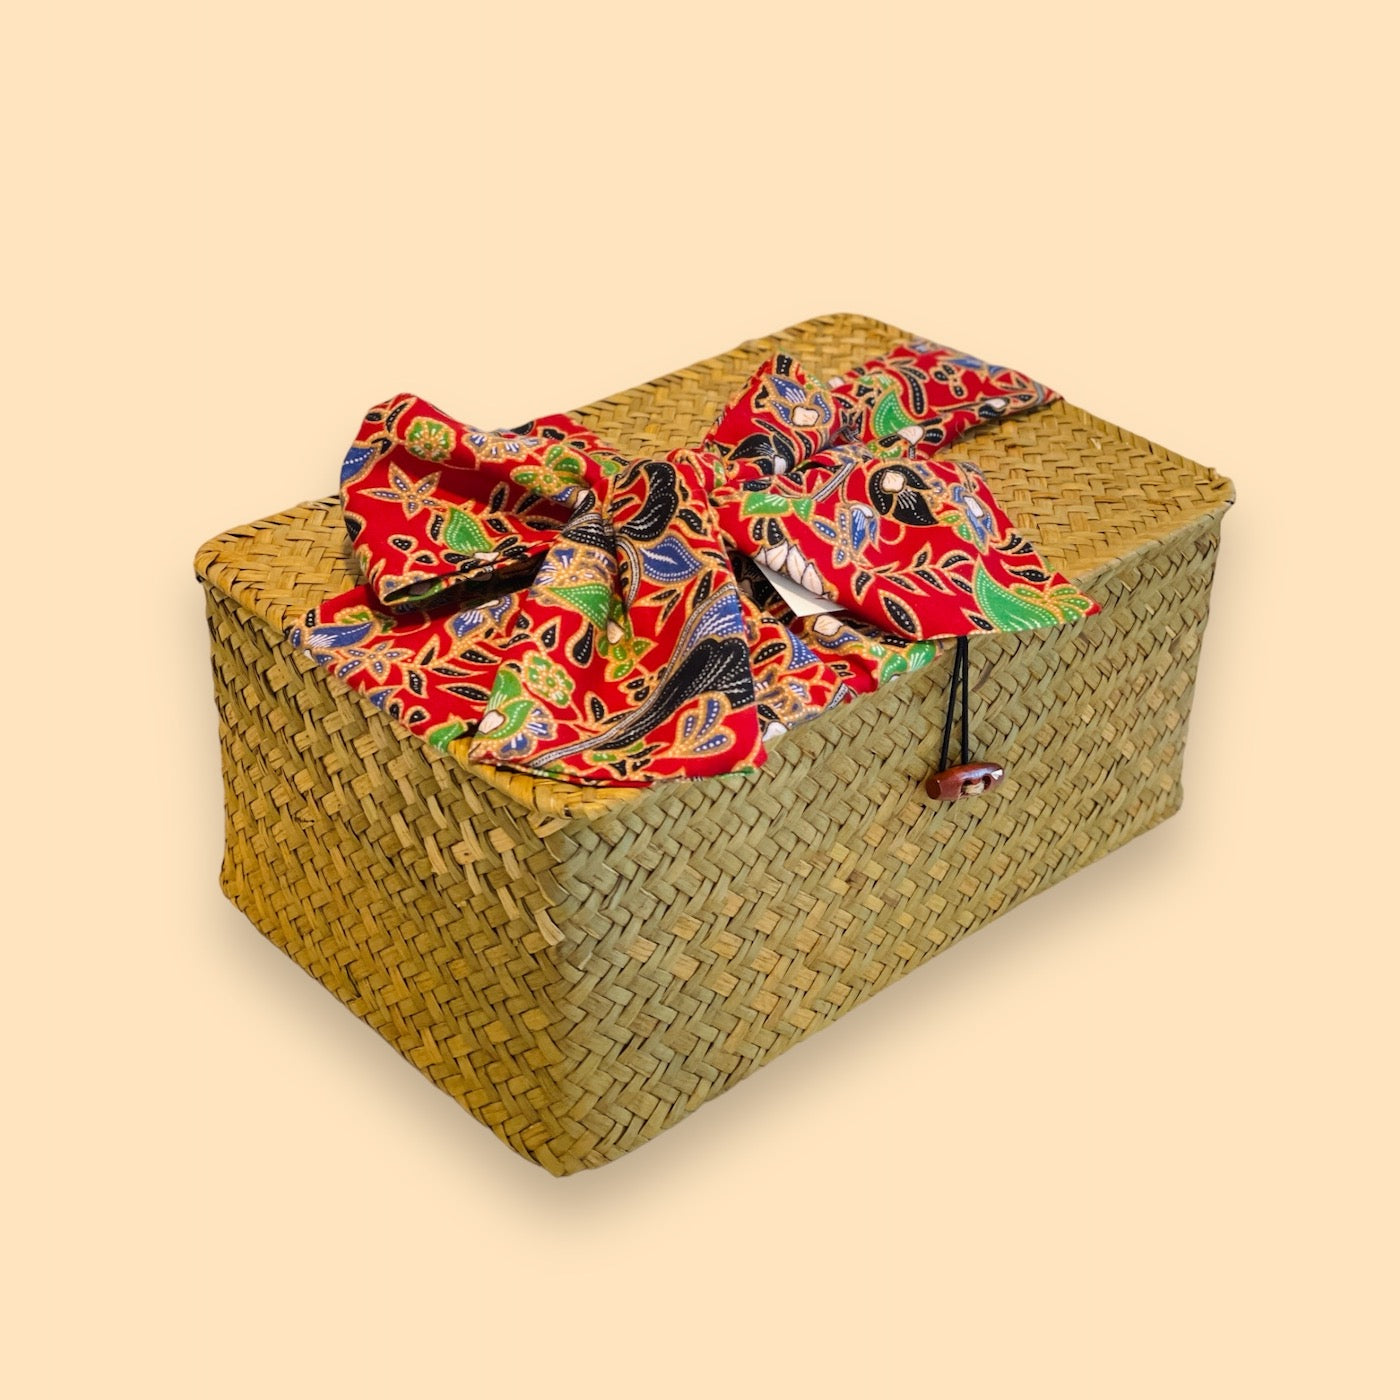 Traditional Rattan Basket Batik Style